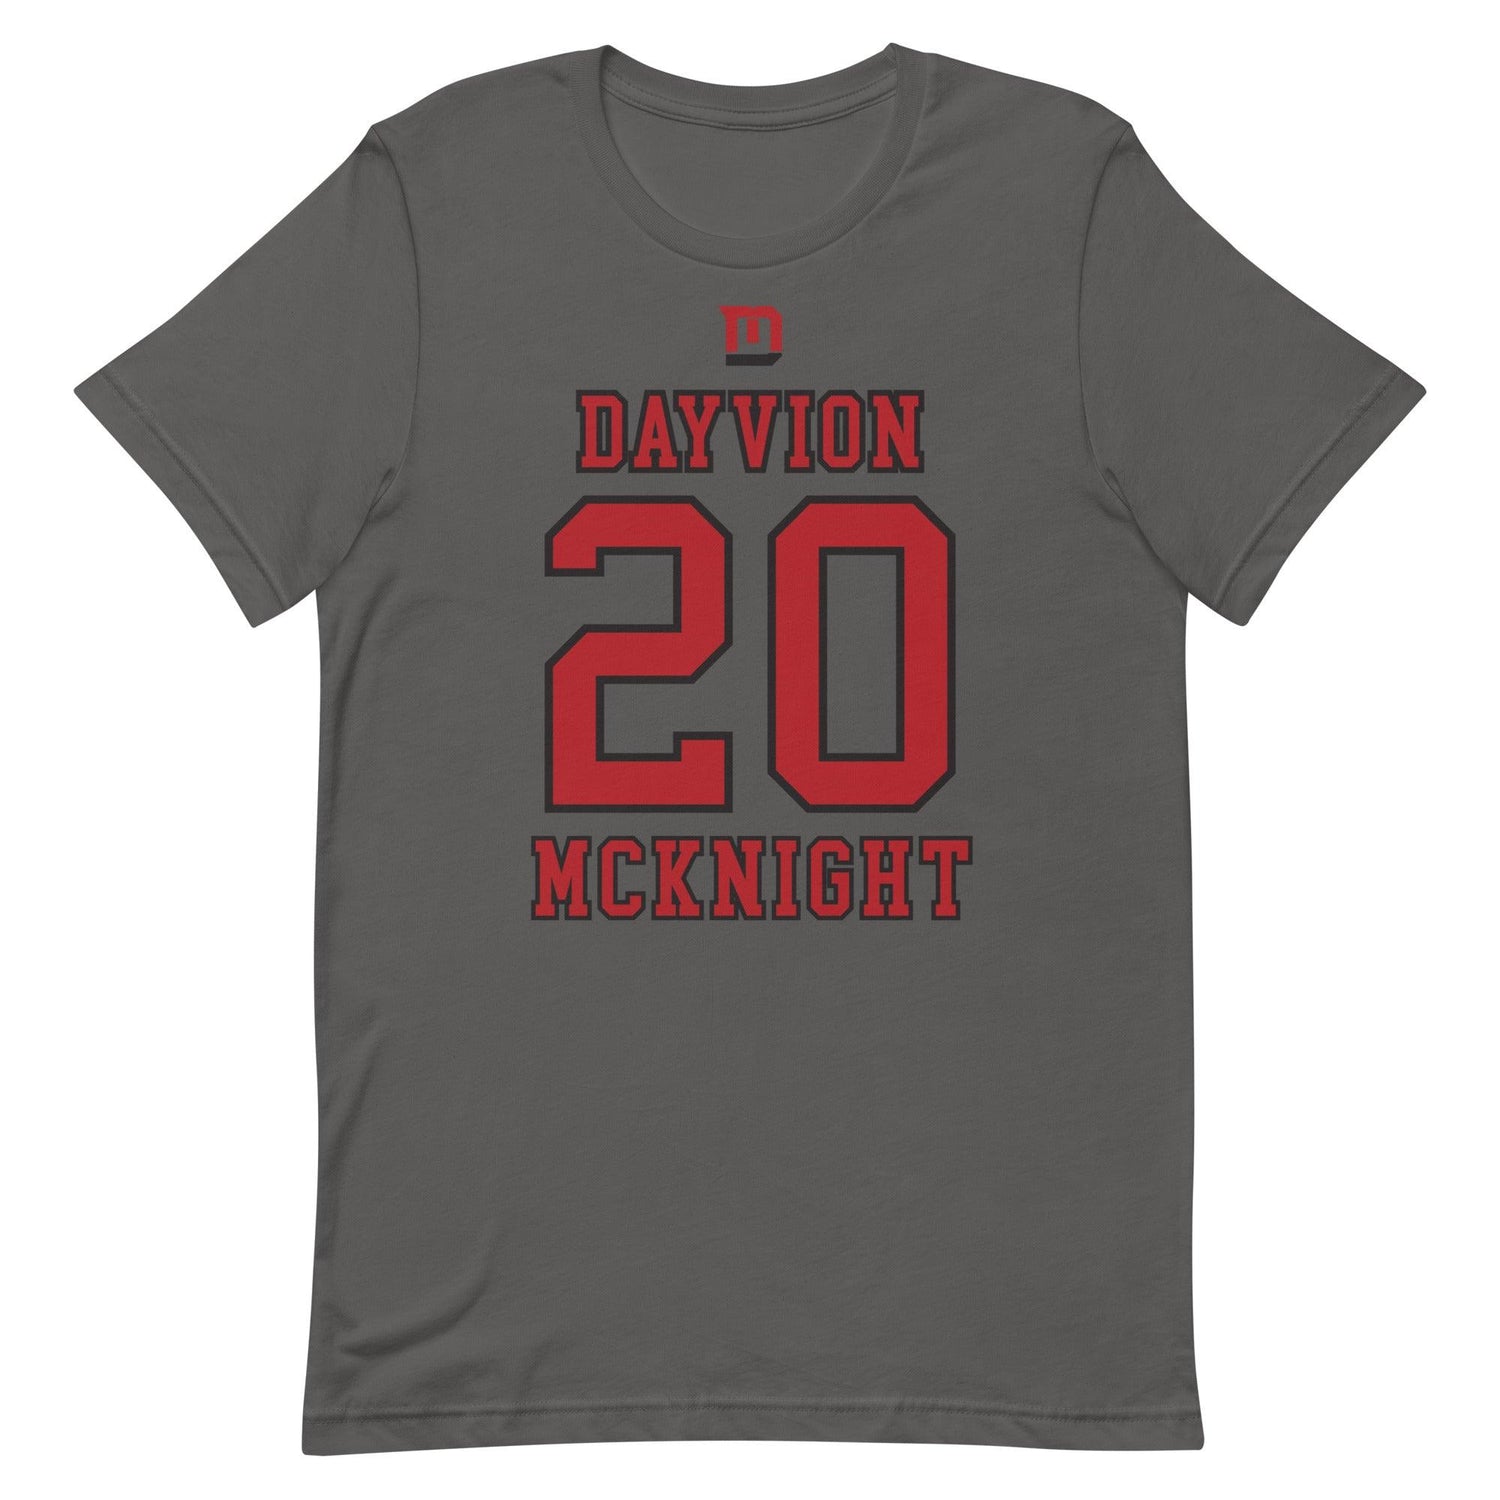 Dayvion McKnight "Jersey" t-shirt - Fan Arch